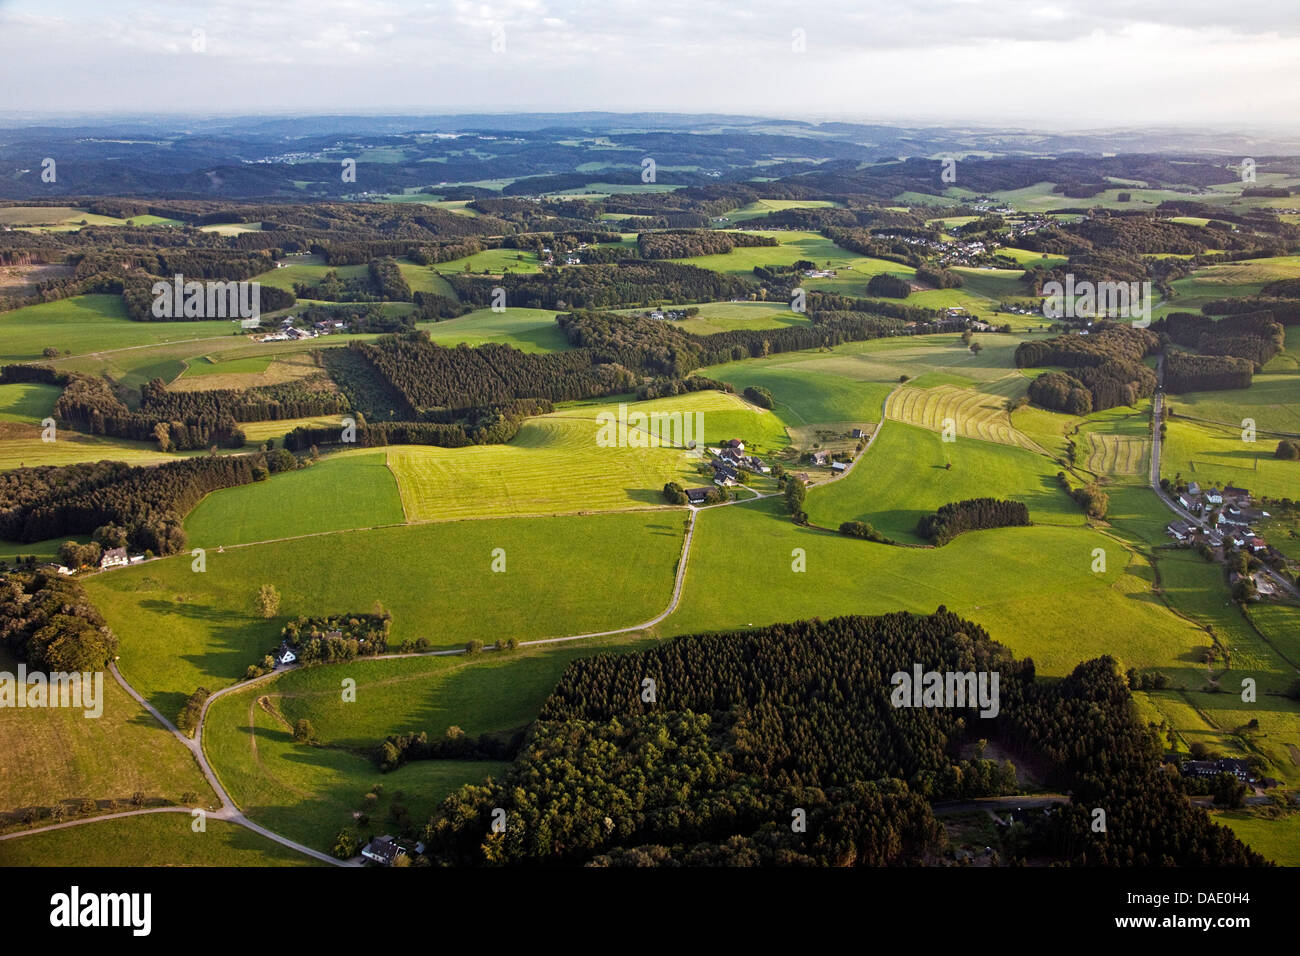 Luftbild, hügelige Landschaft, Wipperfuerth, Oberbergisches Land, Nordrhein-Westfalen, Deutschland Stockfoto